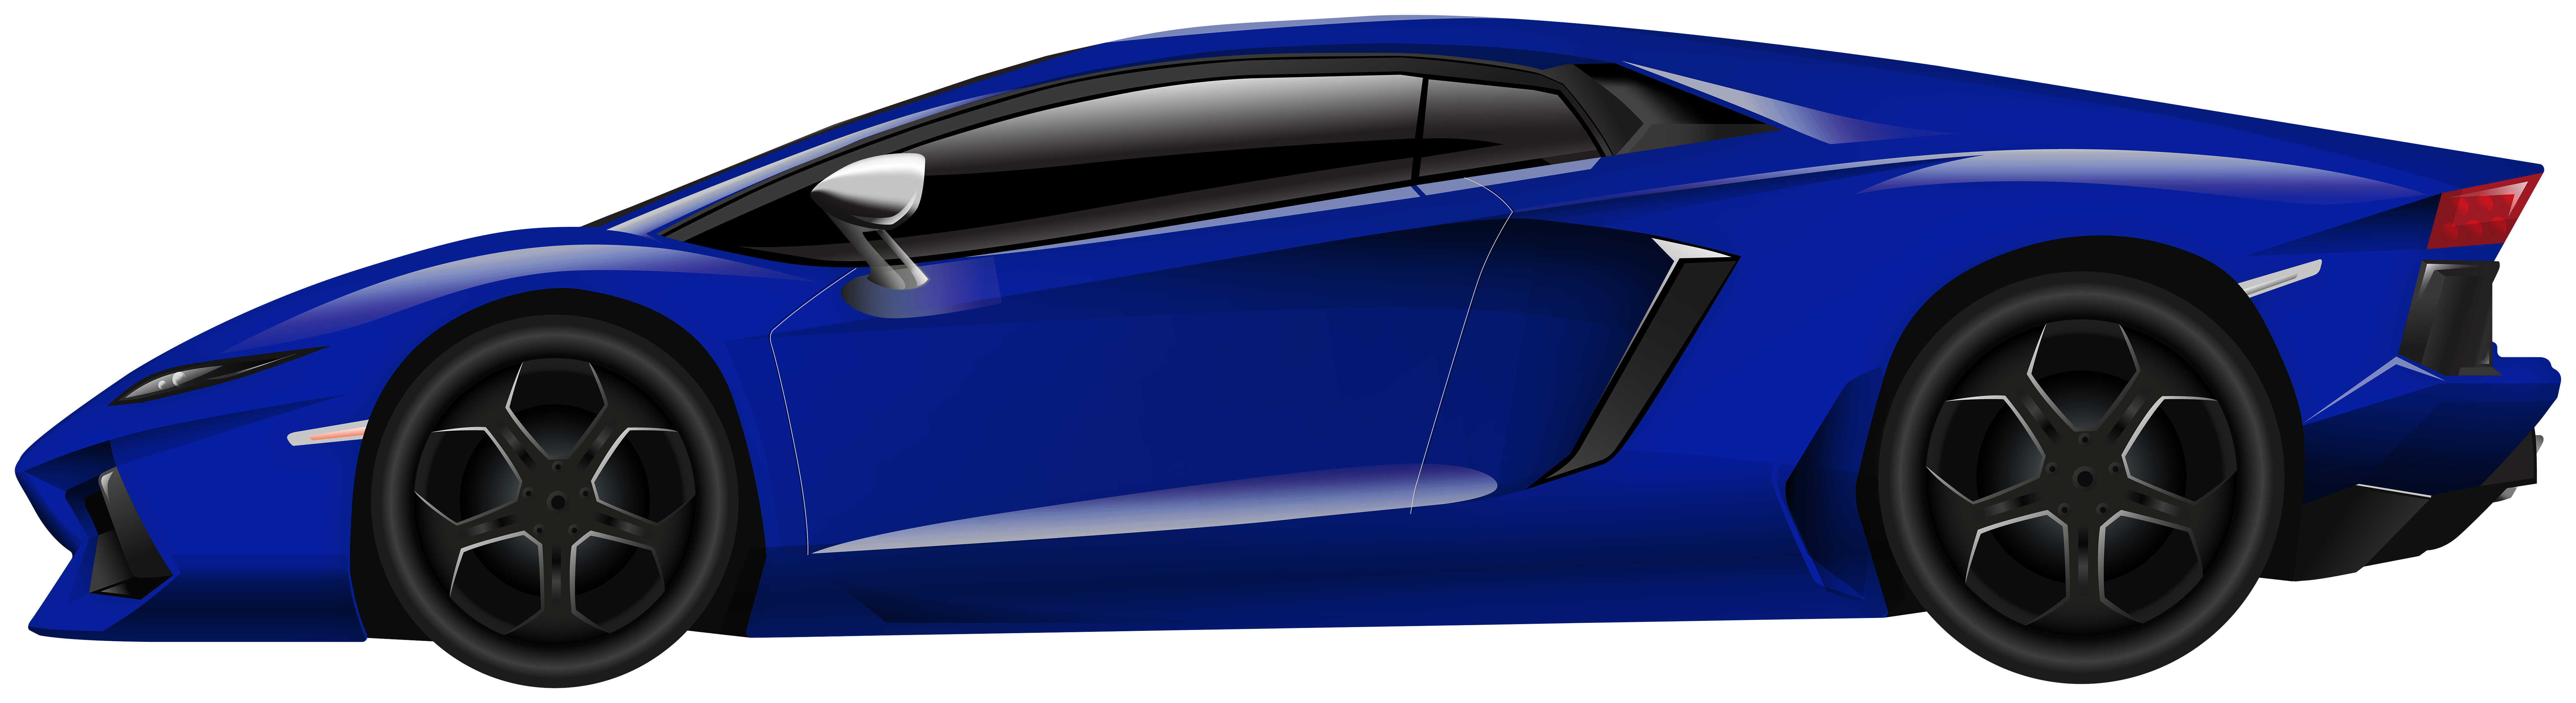 Blue Sport Car PNG Clipart - Best WEB Clipart